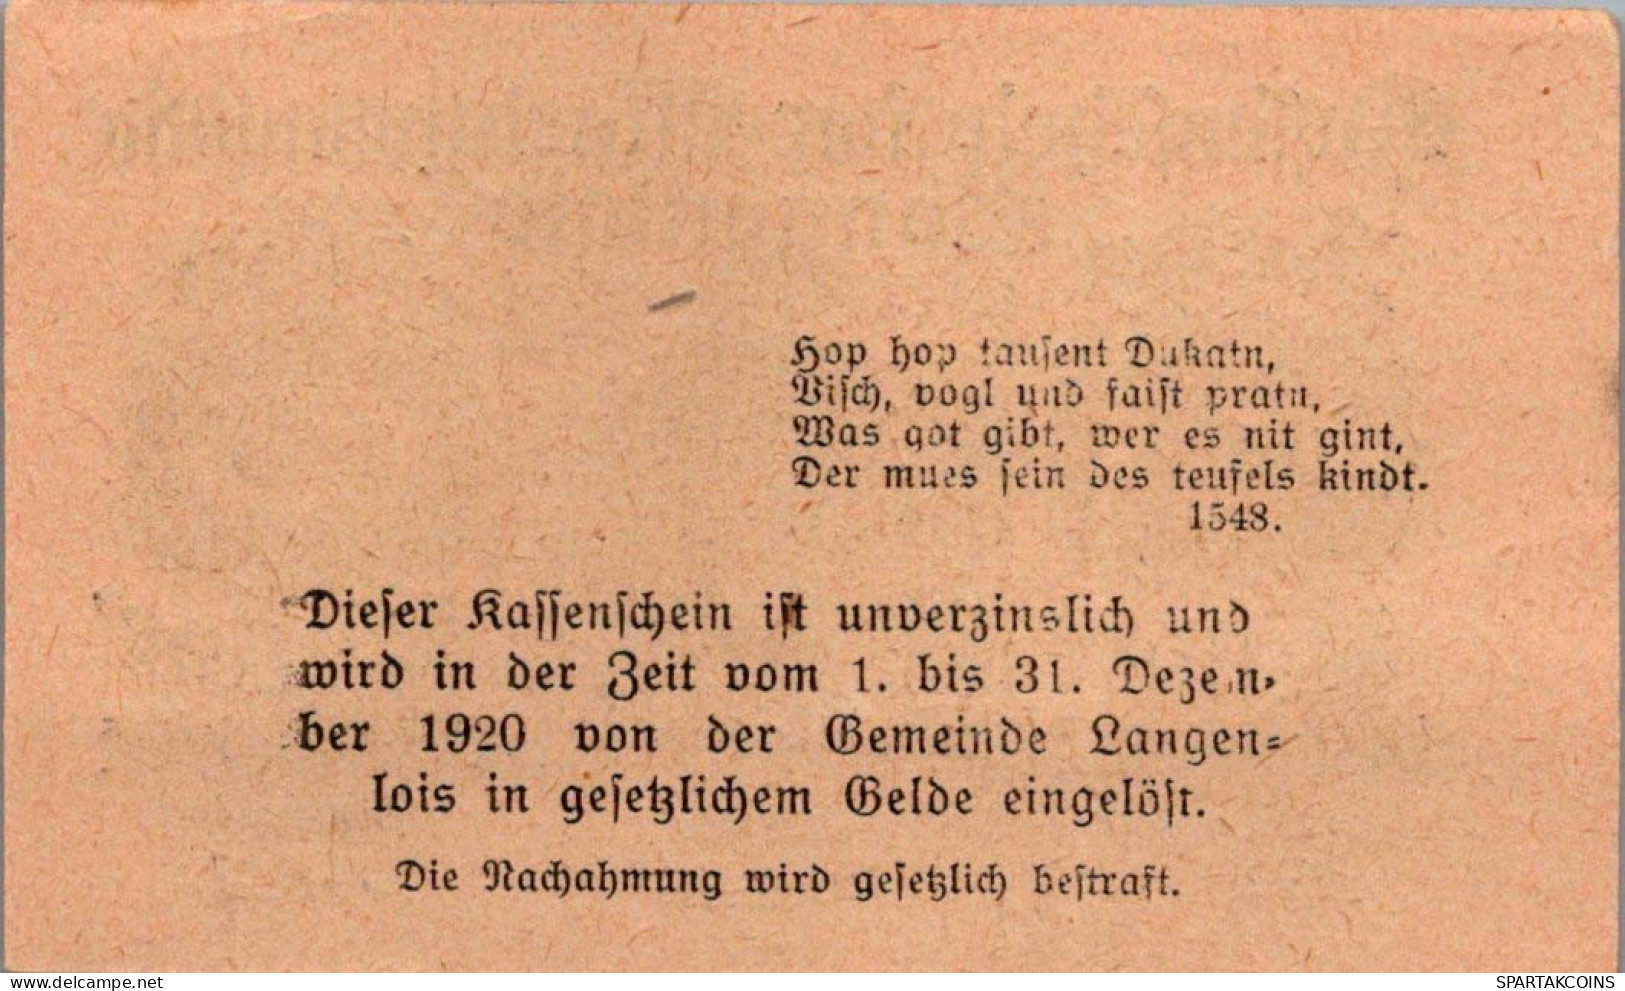 10 HELLER 1920 Stadt LANGENLOIS Niedrigeren Österreich Notgeld Papiergeld Banknote #PG601 - [11] Emissioni Locali